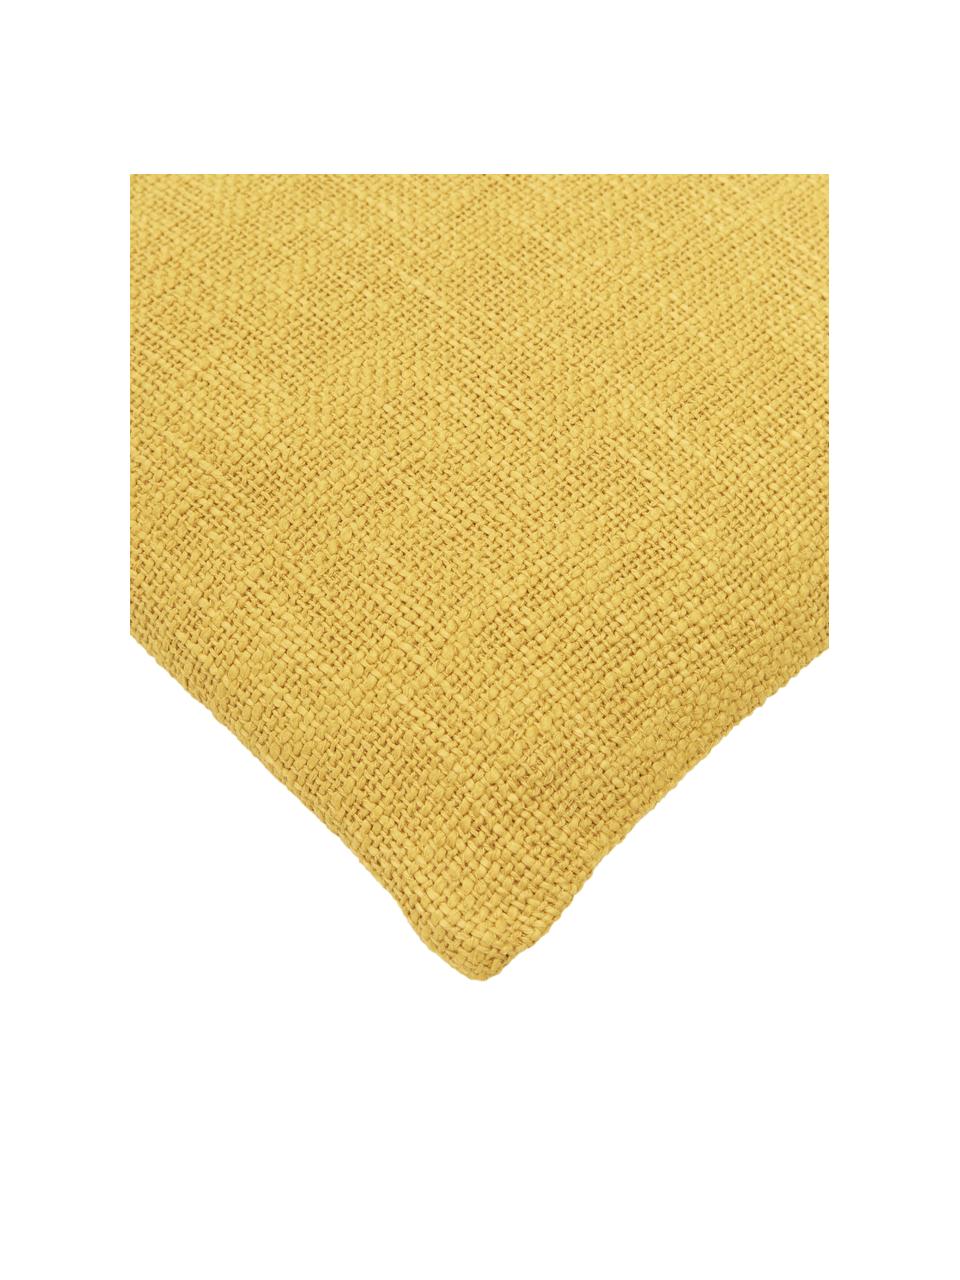 Housse de coussin jaune Penny, 100 % coton, Jaune, larg. 45 x long. 45 cm